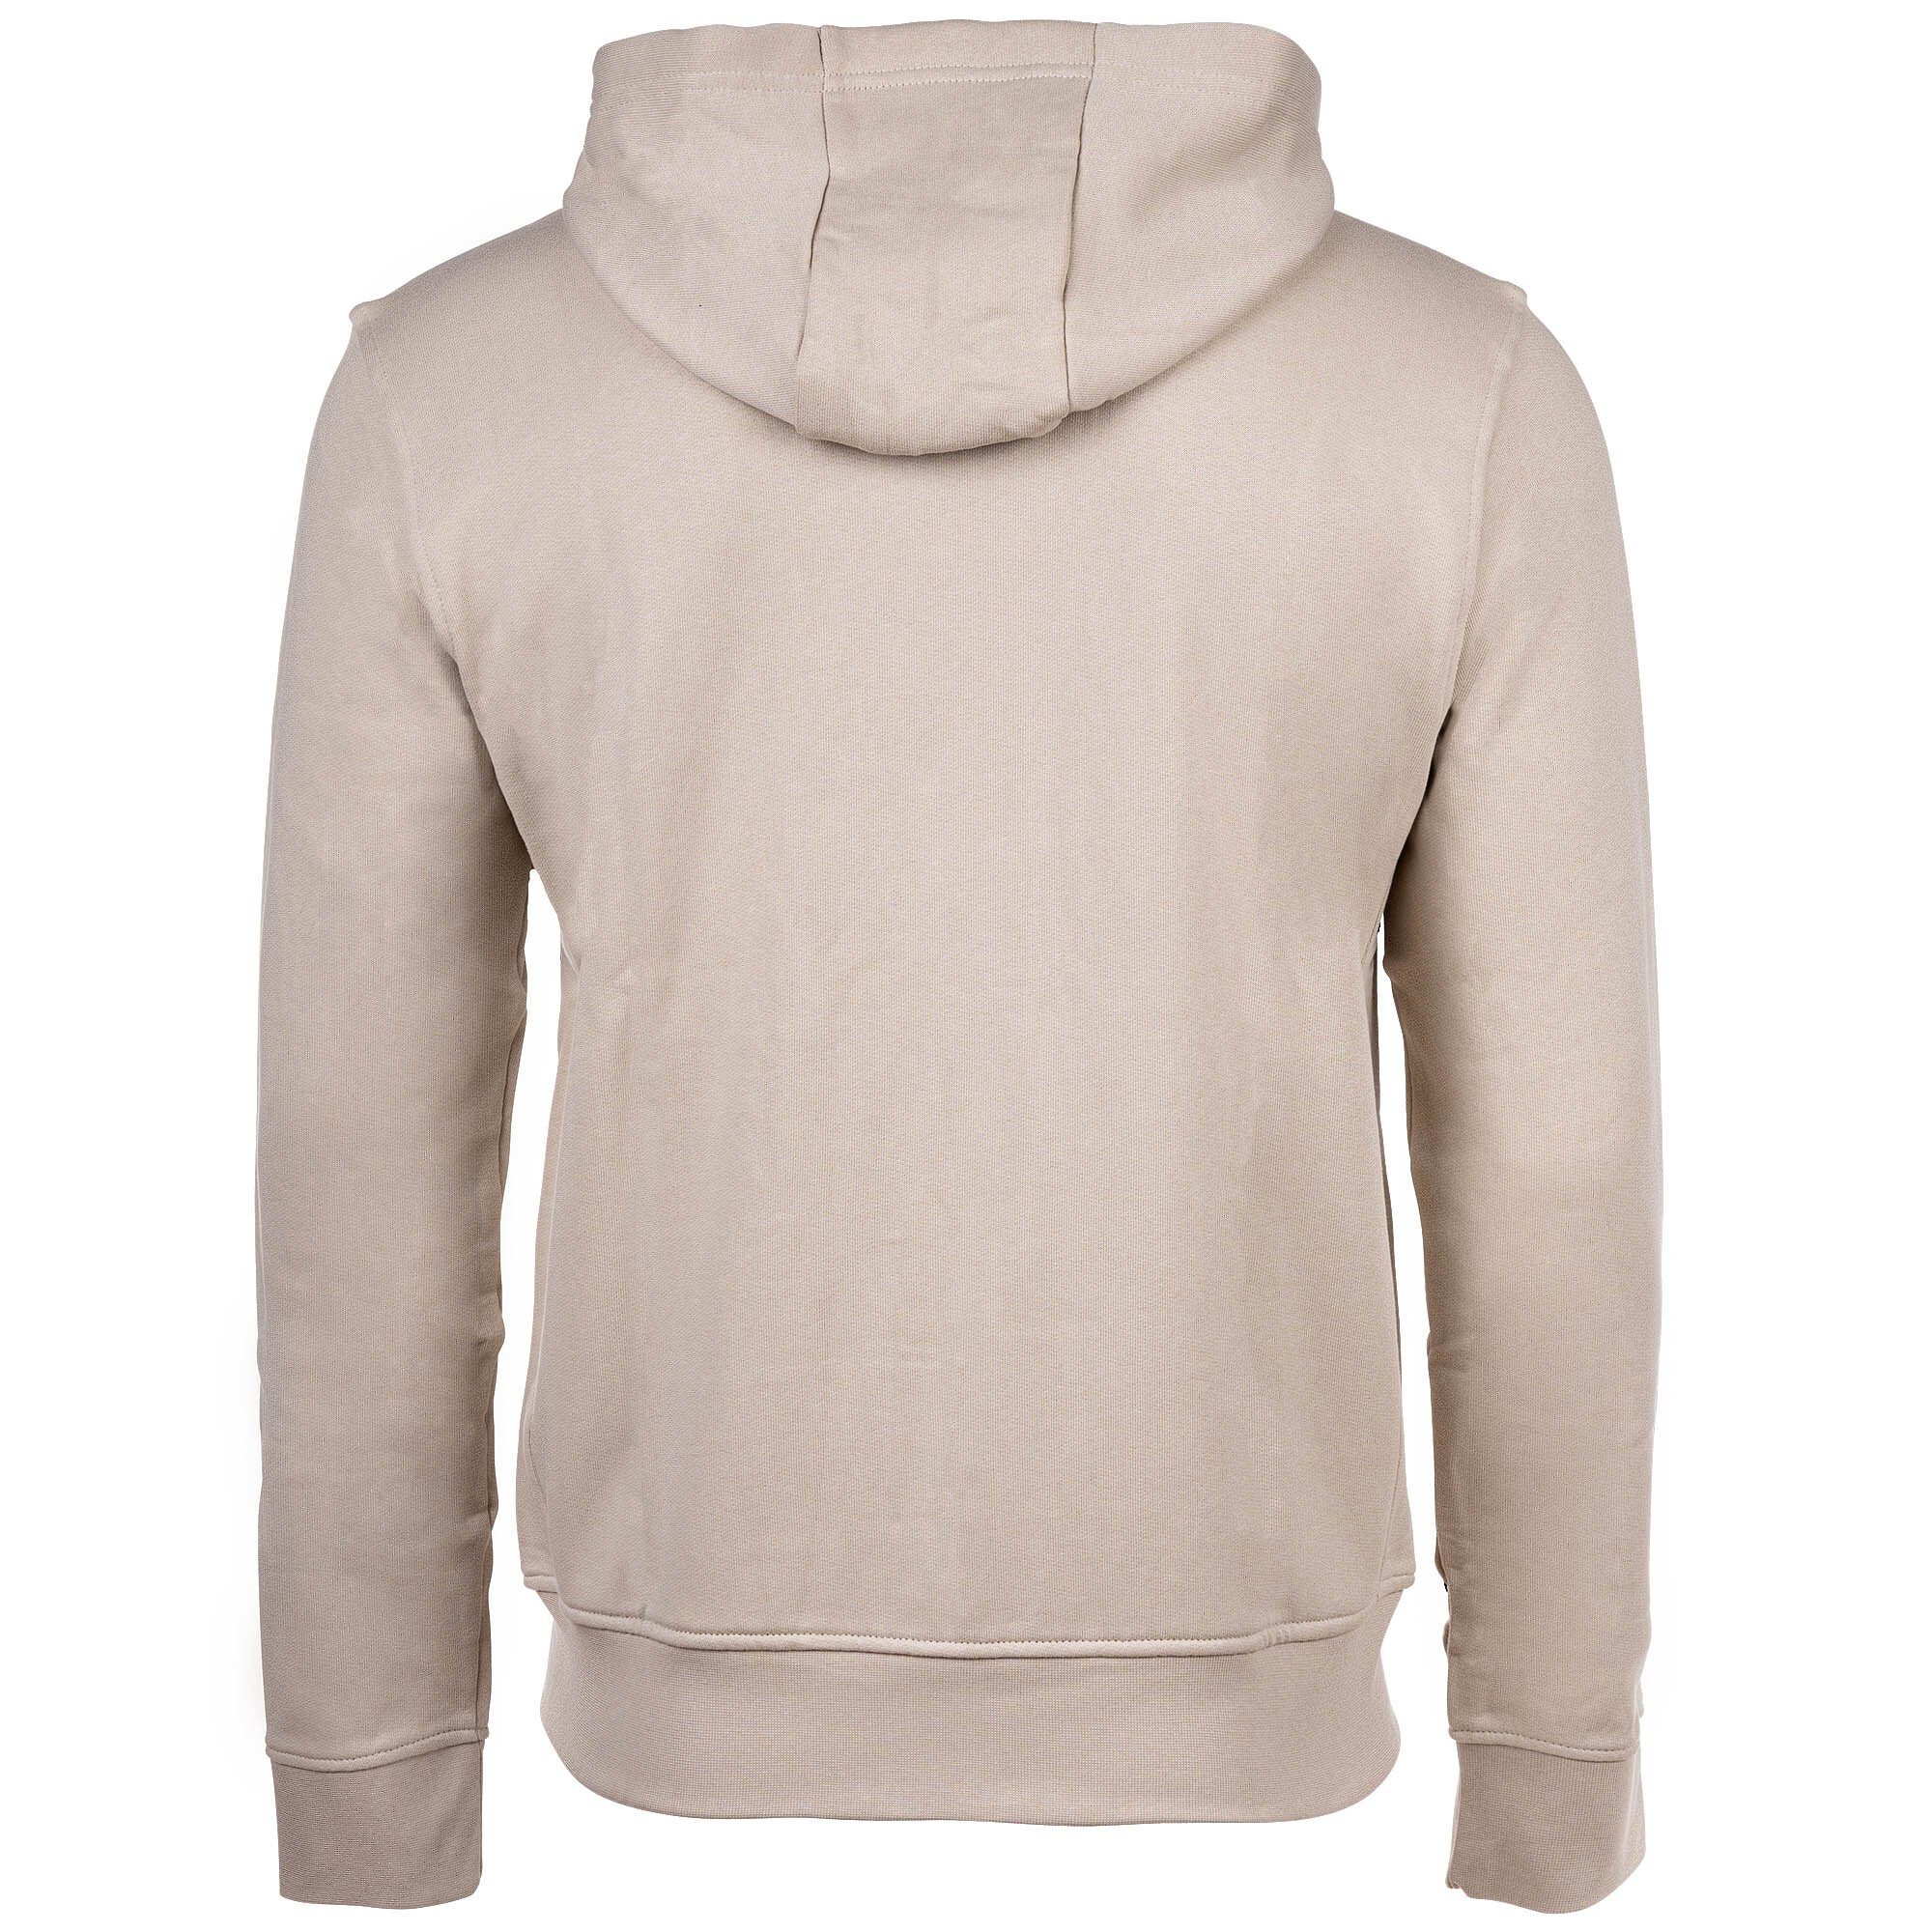 ARMANI EXCHANGE Sweatshirt Herren Logo Beige Sweatshirtjacke, Sweatshirt - (Silver Lining)